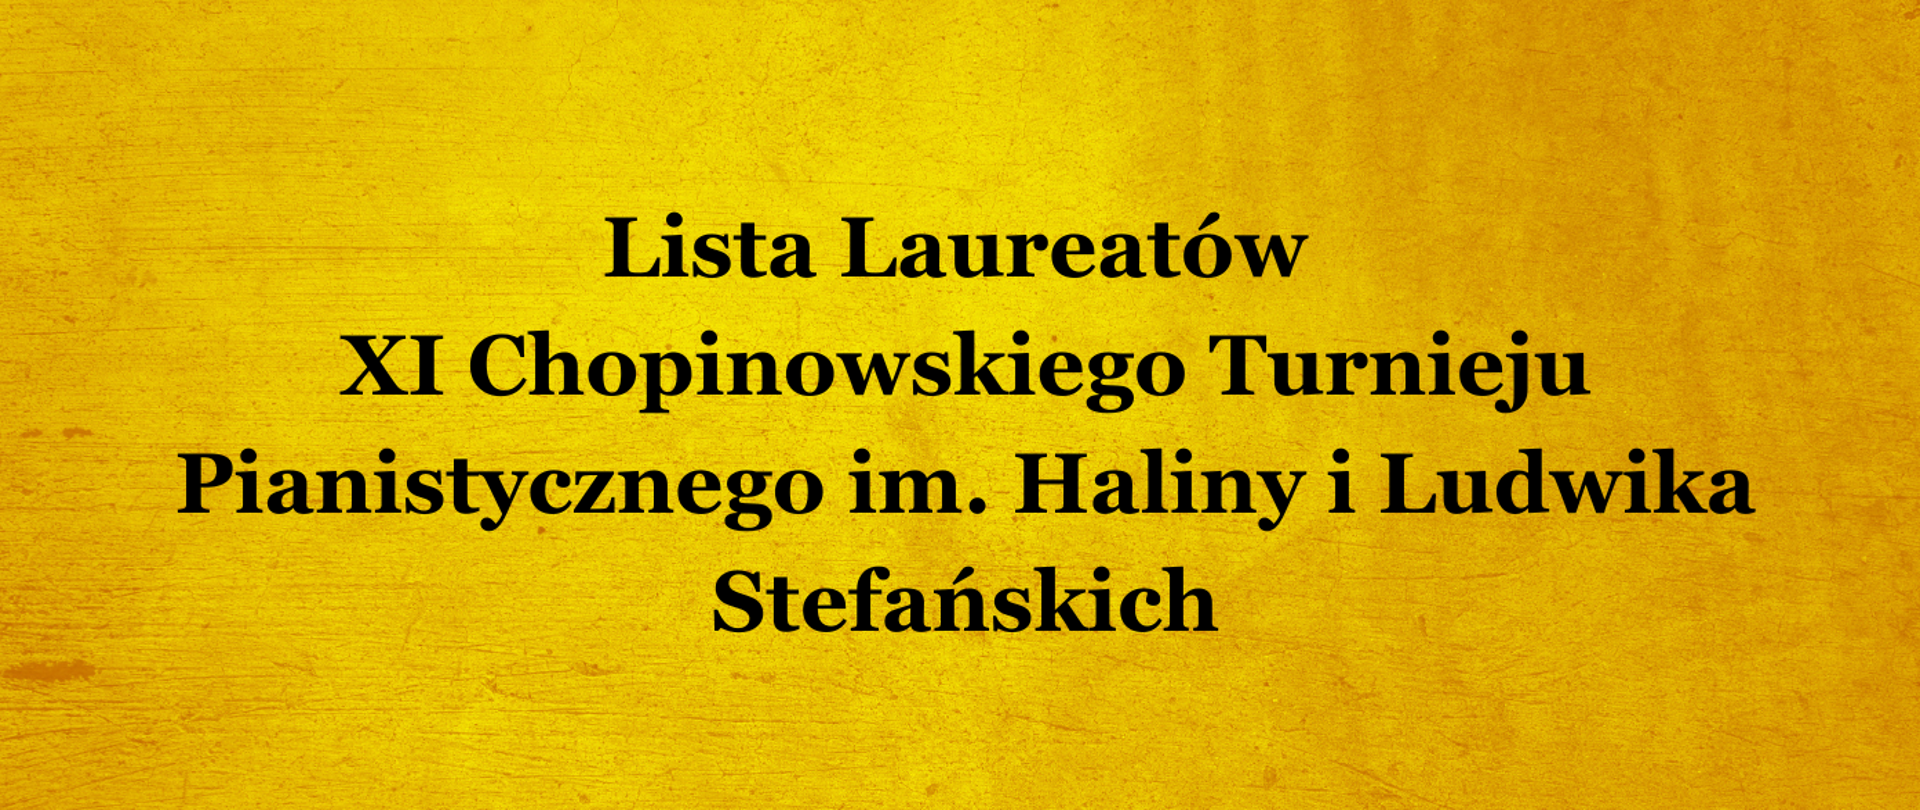 na żółtym tle napis "Lista Laureatów
XI Chopinowskiego Turnieju Pianistycznego im. Haliny i Ludwika Stefańskich"